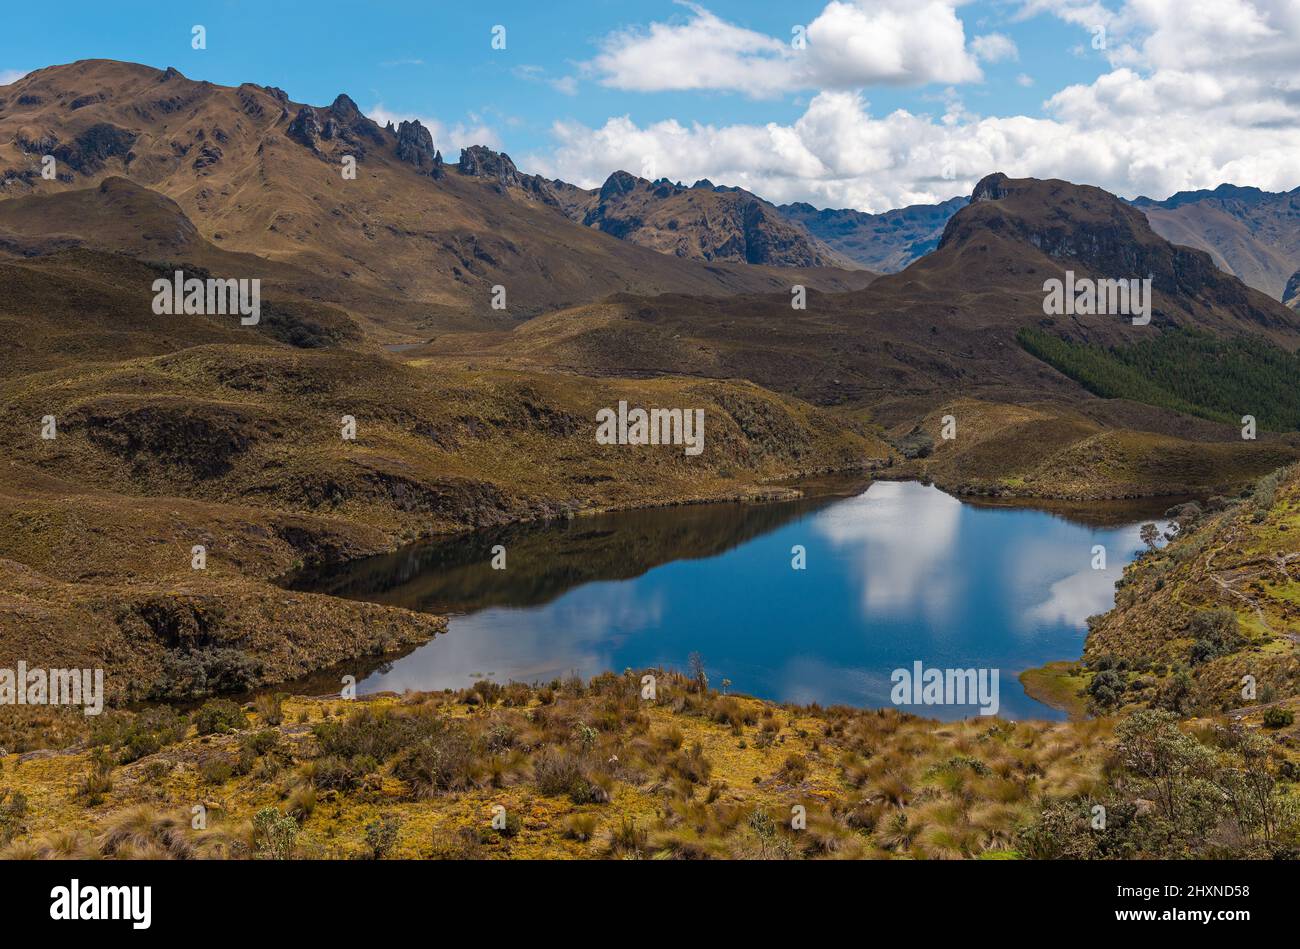 Lagune et montagnes des Andes, parc national de cajas, Cuenca, Equateur. Banque D'Images